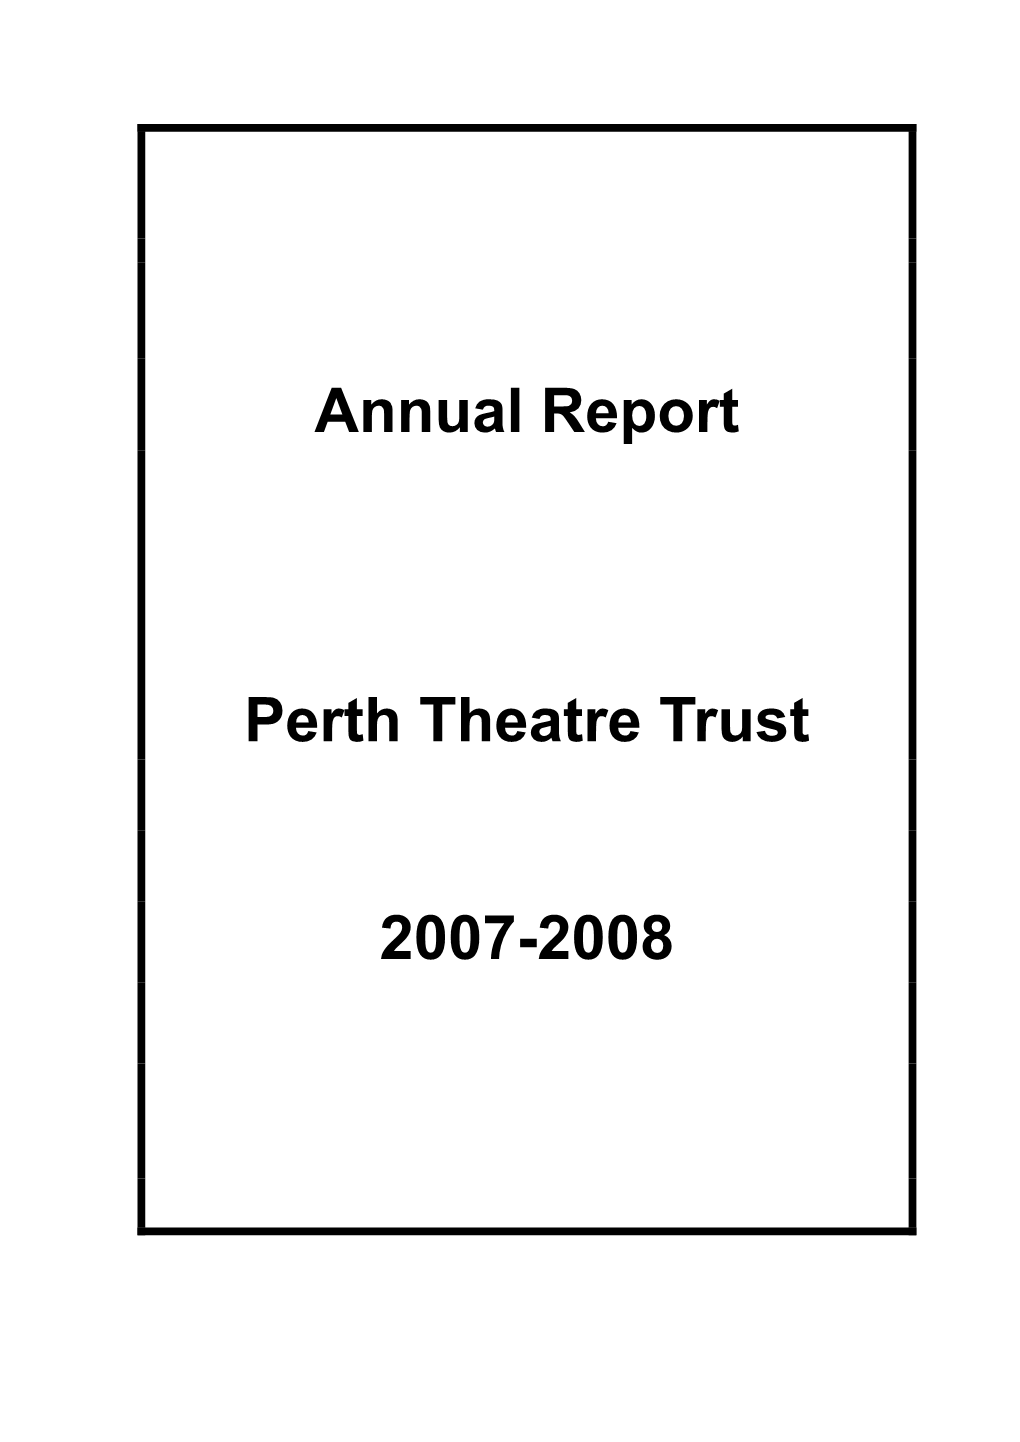 Annual Report Perth Theatre Trust 2007-2008